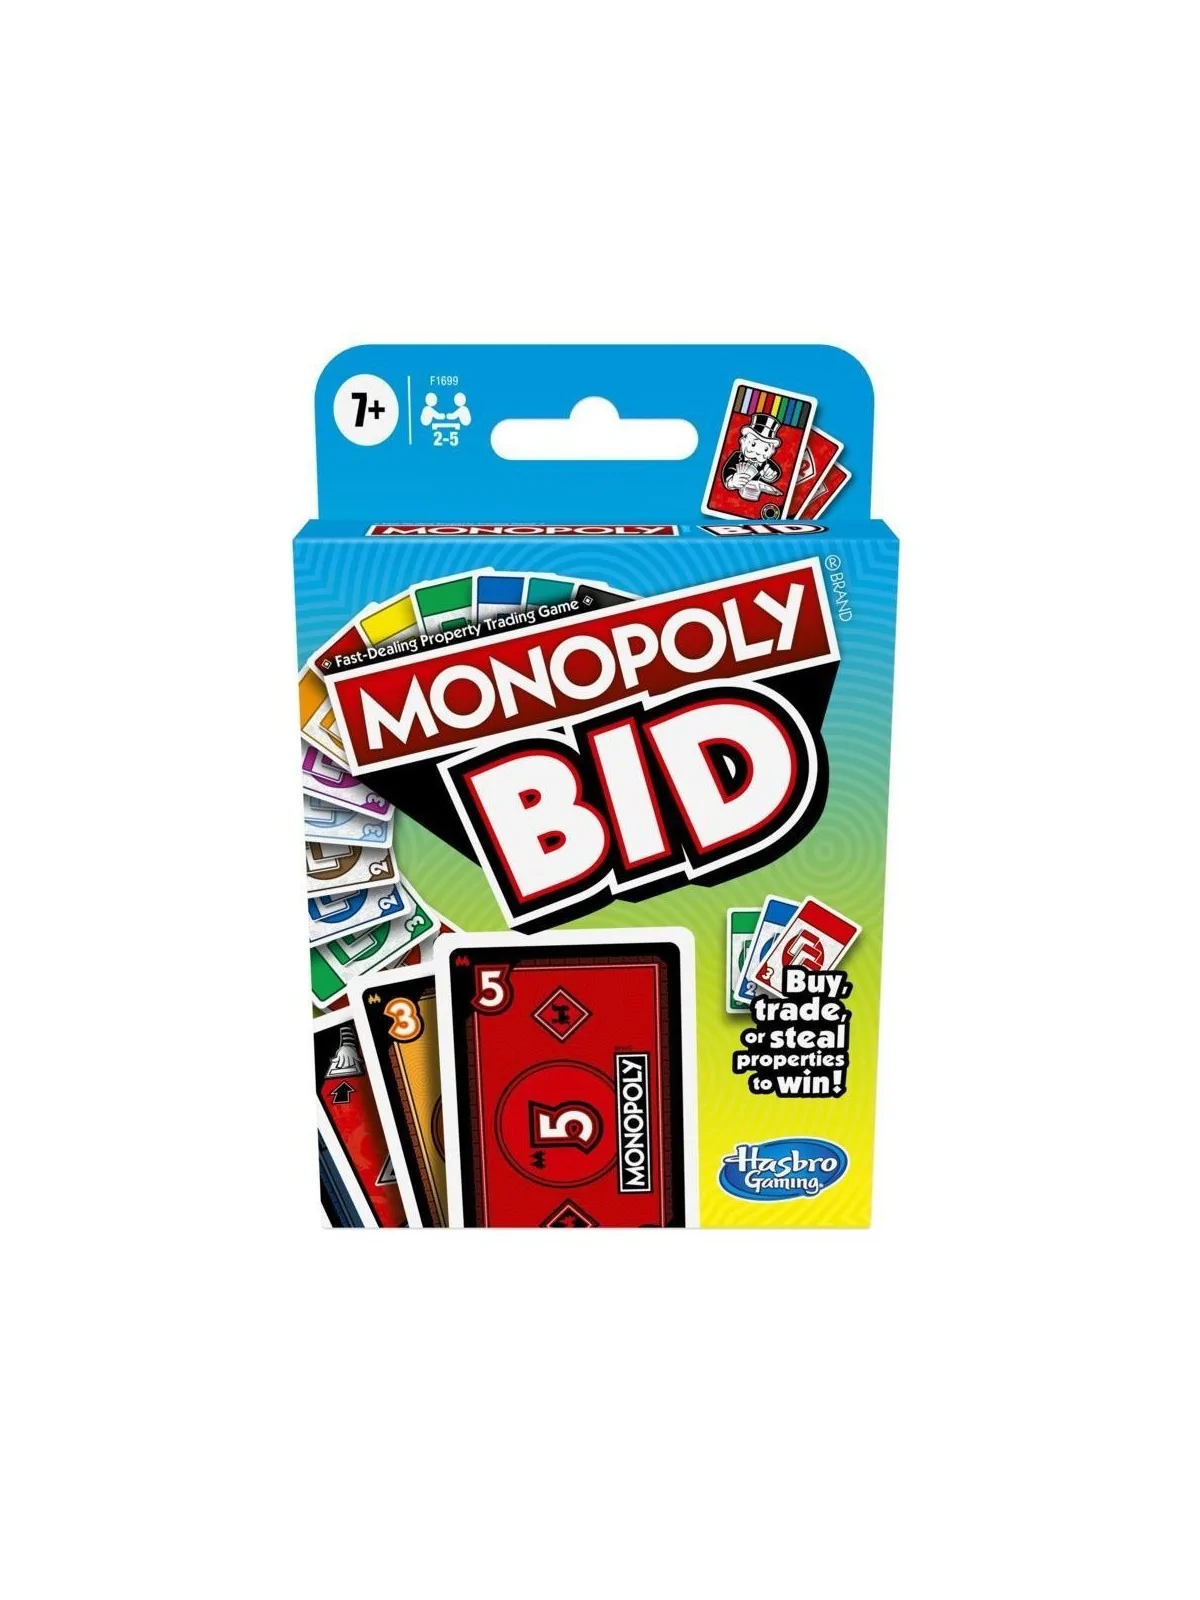 Comprar Monopoly: Bid barato al mejor precio 7,16 € de Hasbro